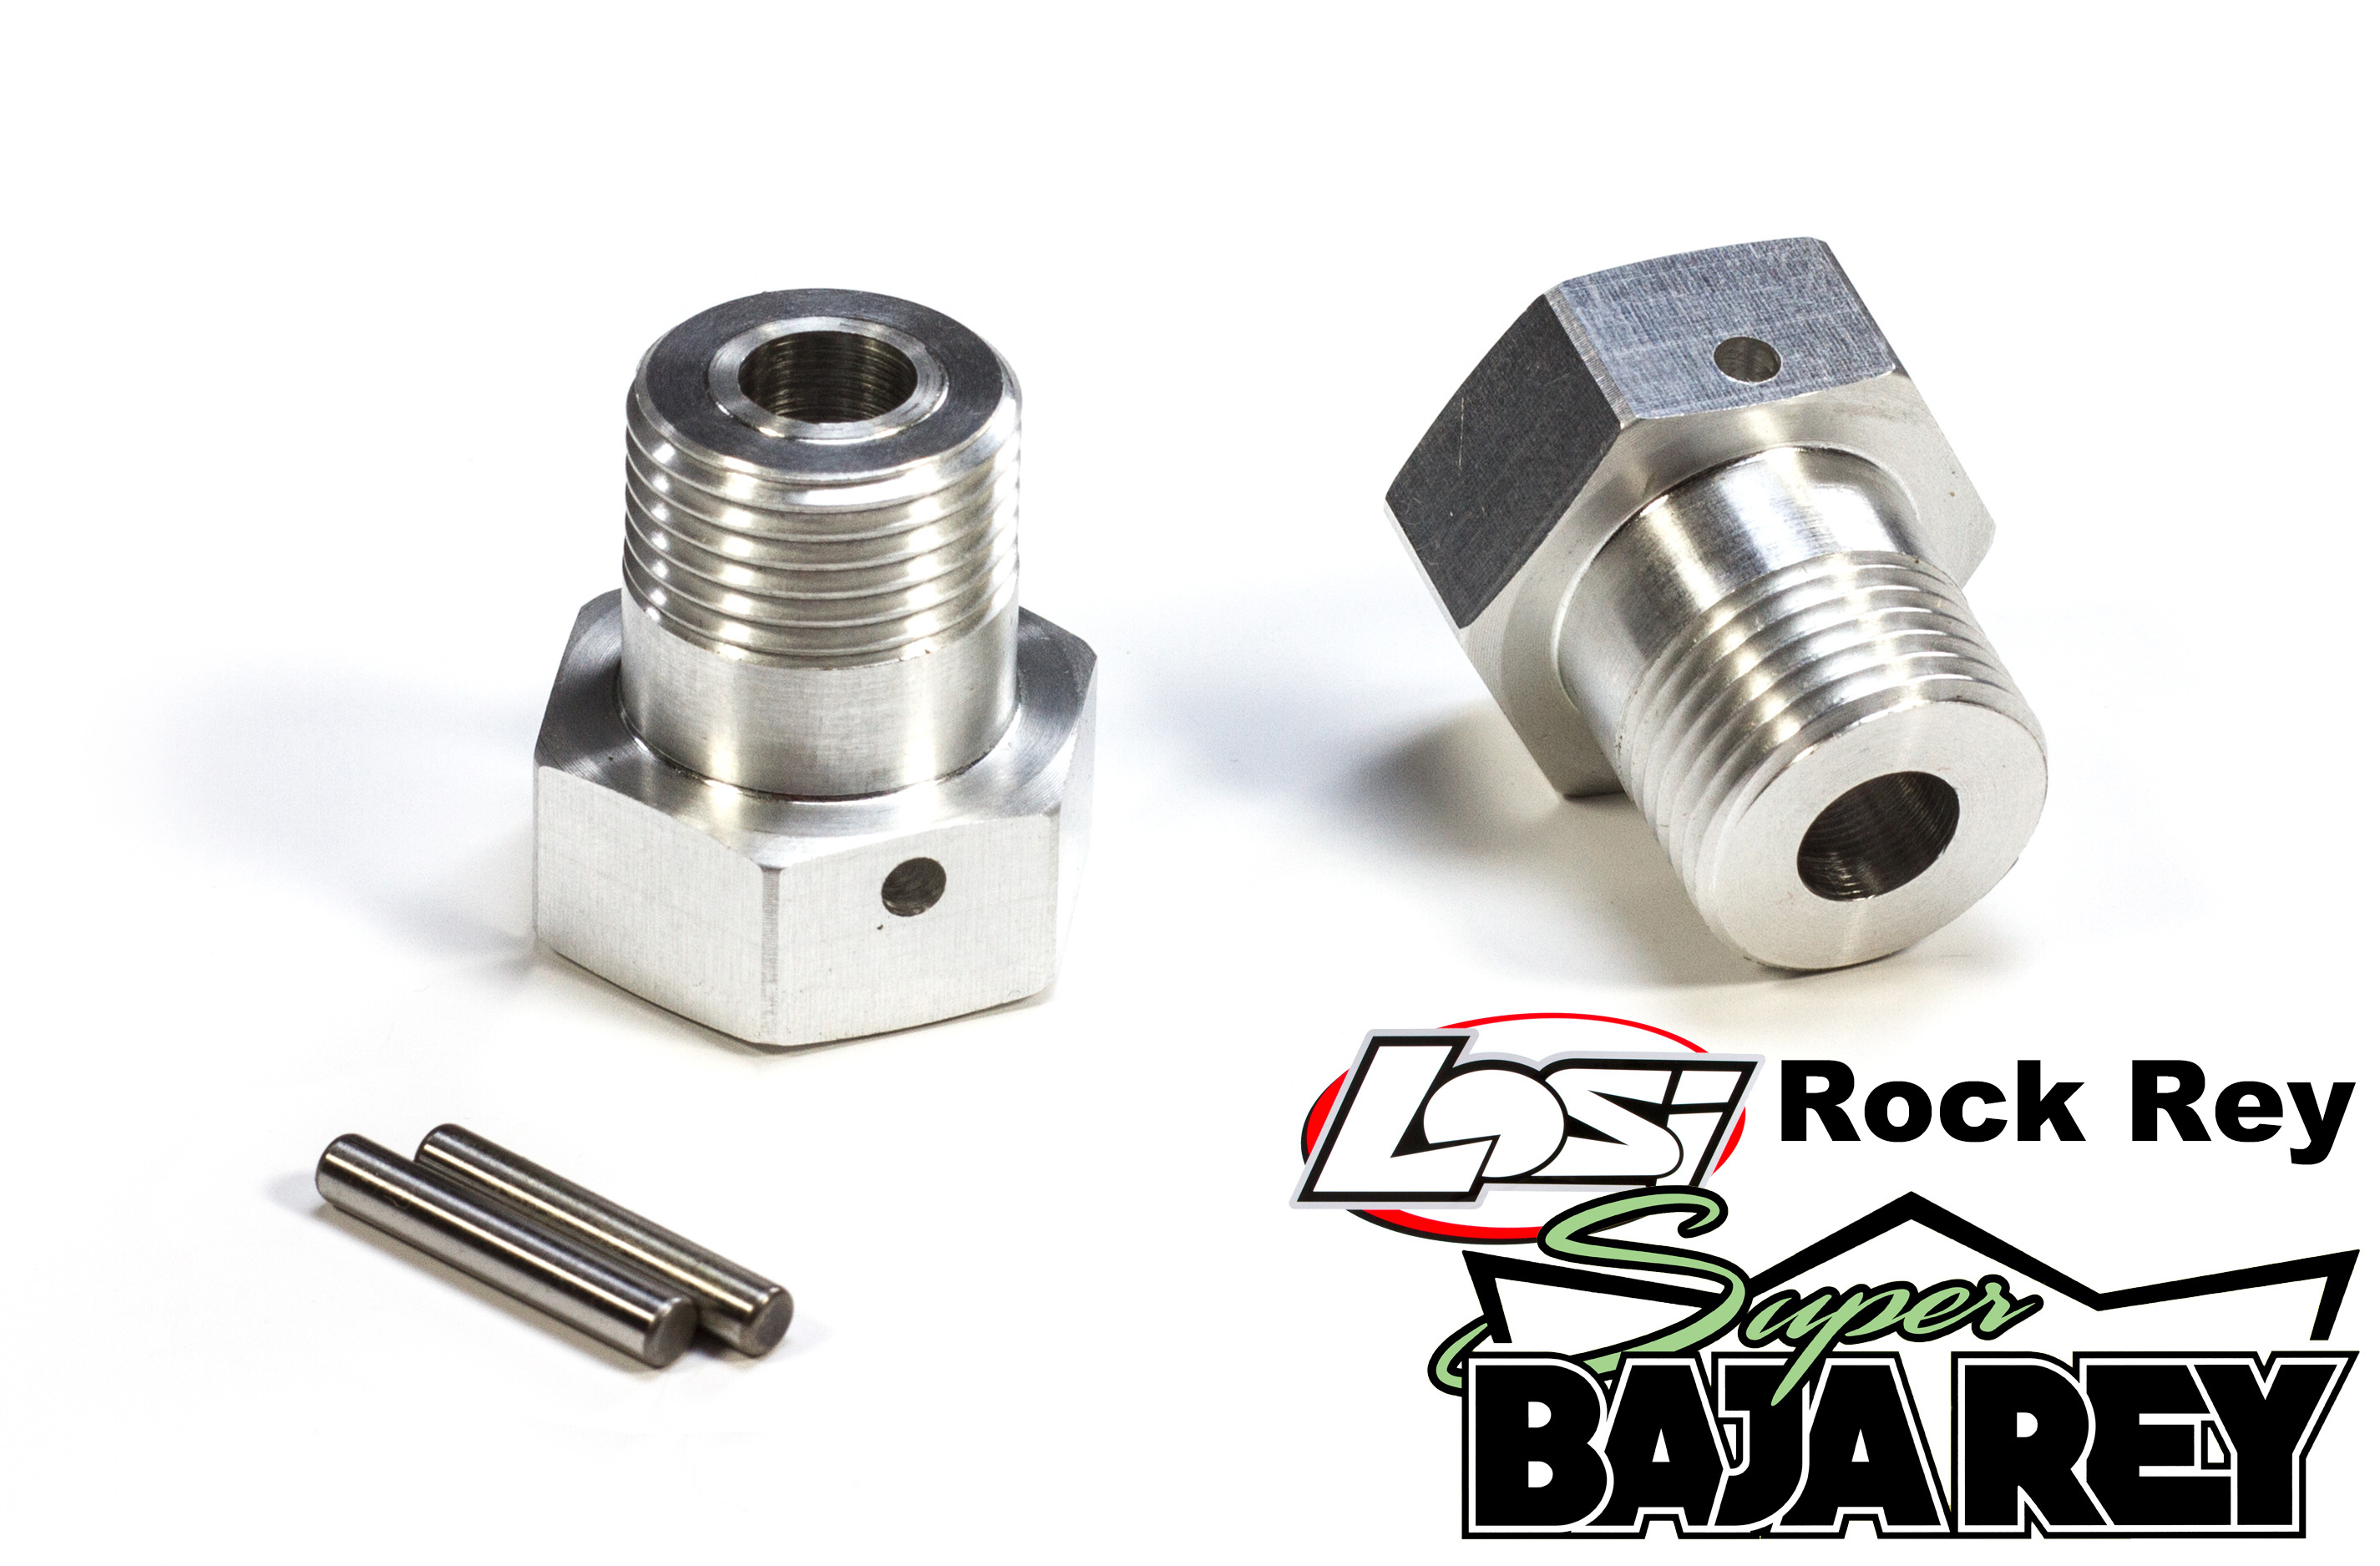 TT1040 Top Tuning Radmitnehmer 24mm/6-Kant für Losi Super Baja Rey / 2.0 und Super Rock Rey / Kunststoffachsschenkel